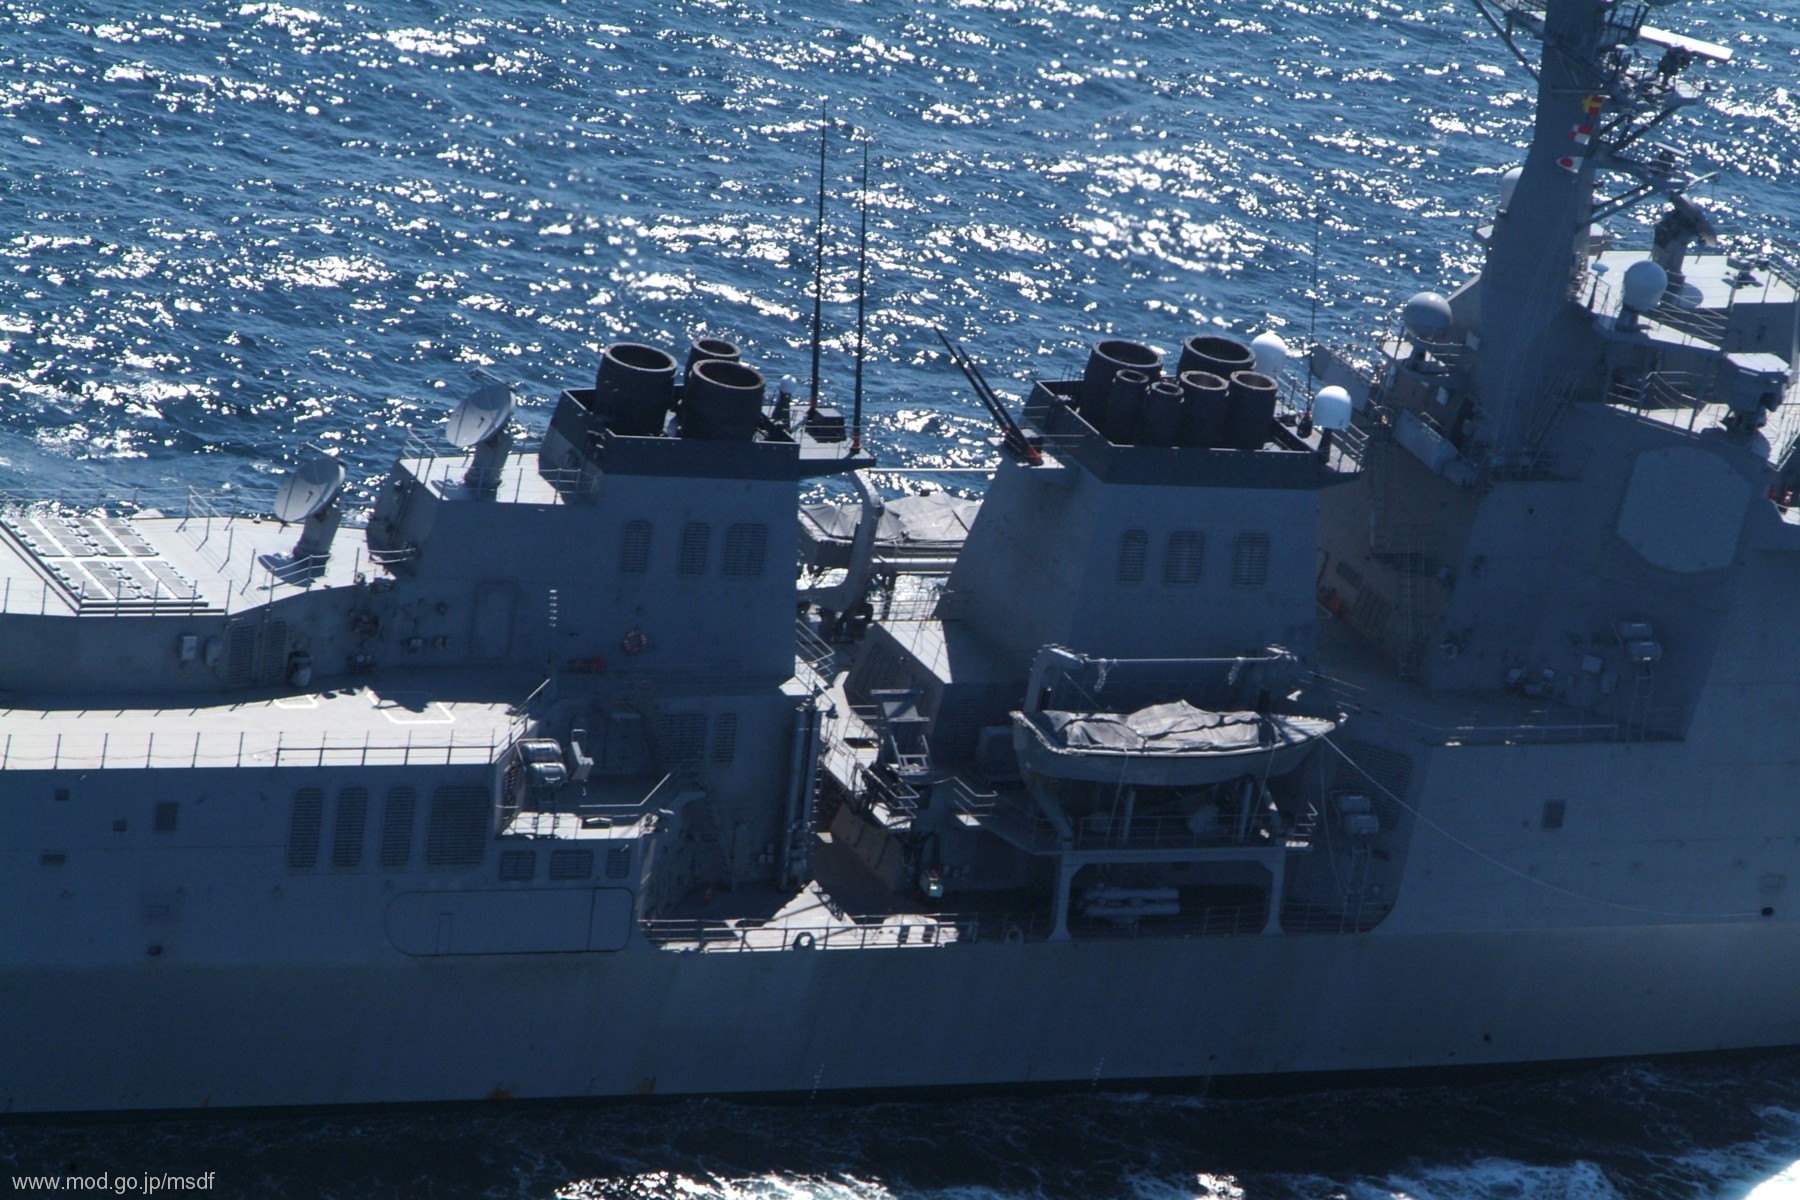 ddg-177 jds atago guided missile destroyer japan maritime self defense force jmsdf 15